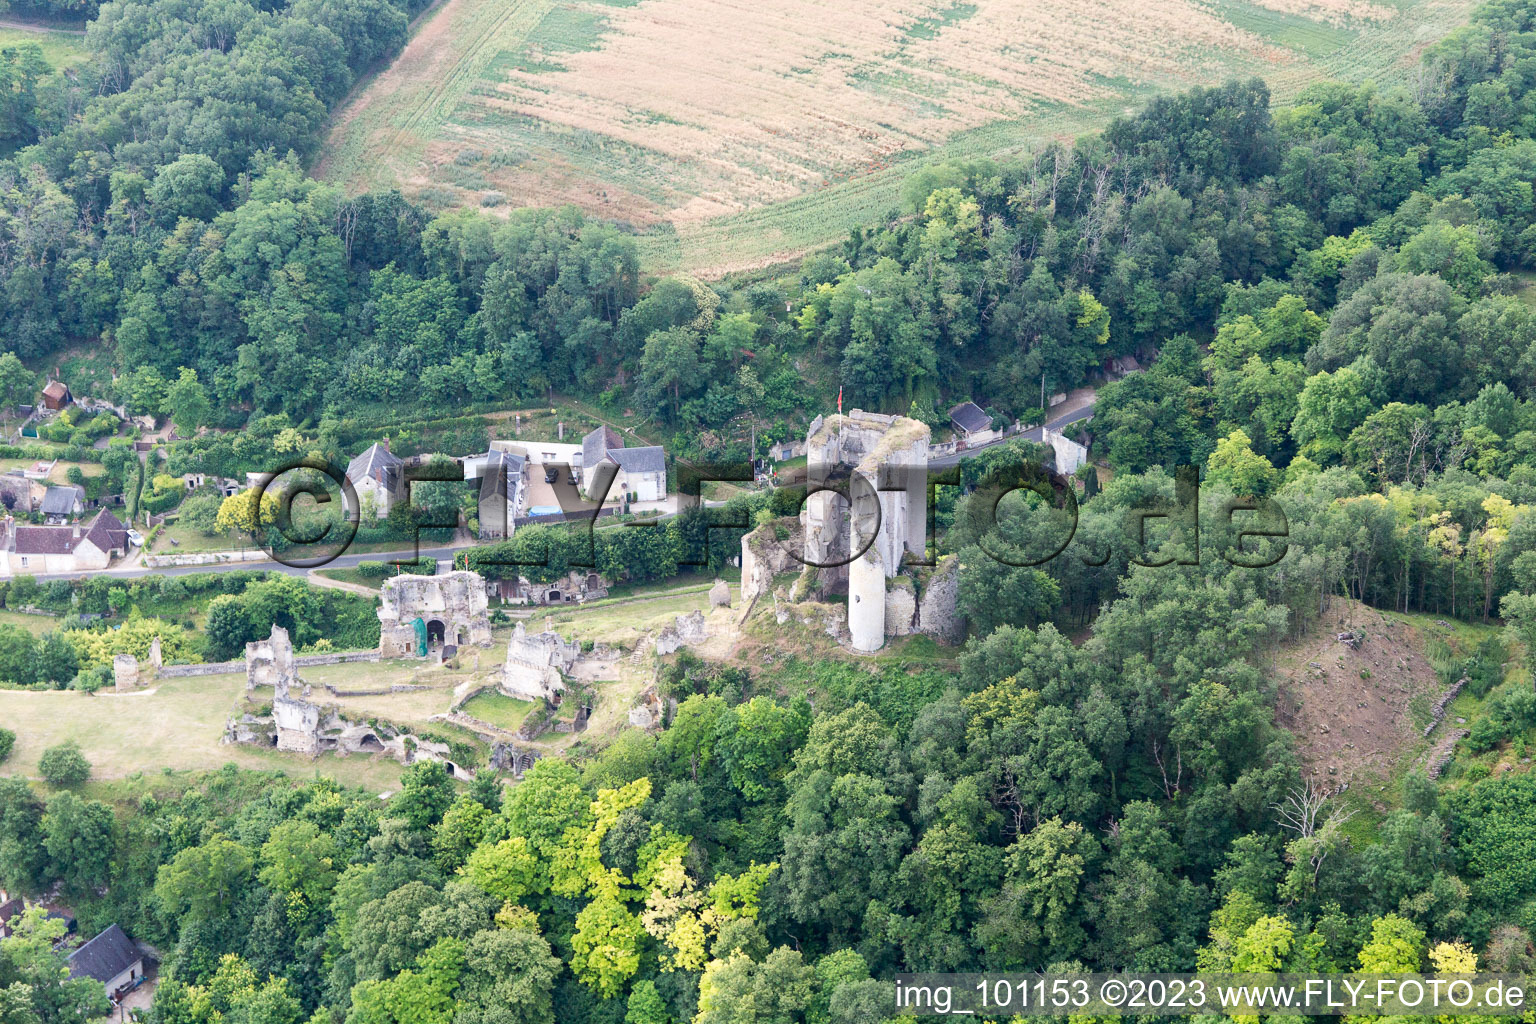 Lavardin im Bundesland Loir-et-Cher, Frankreich aus der Luft betrachtet